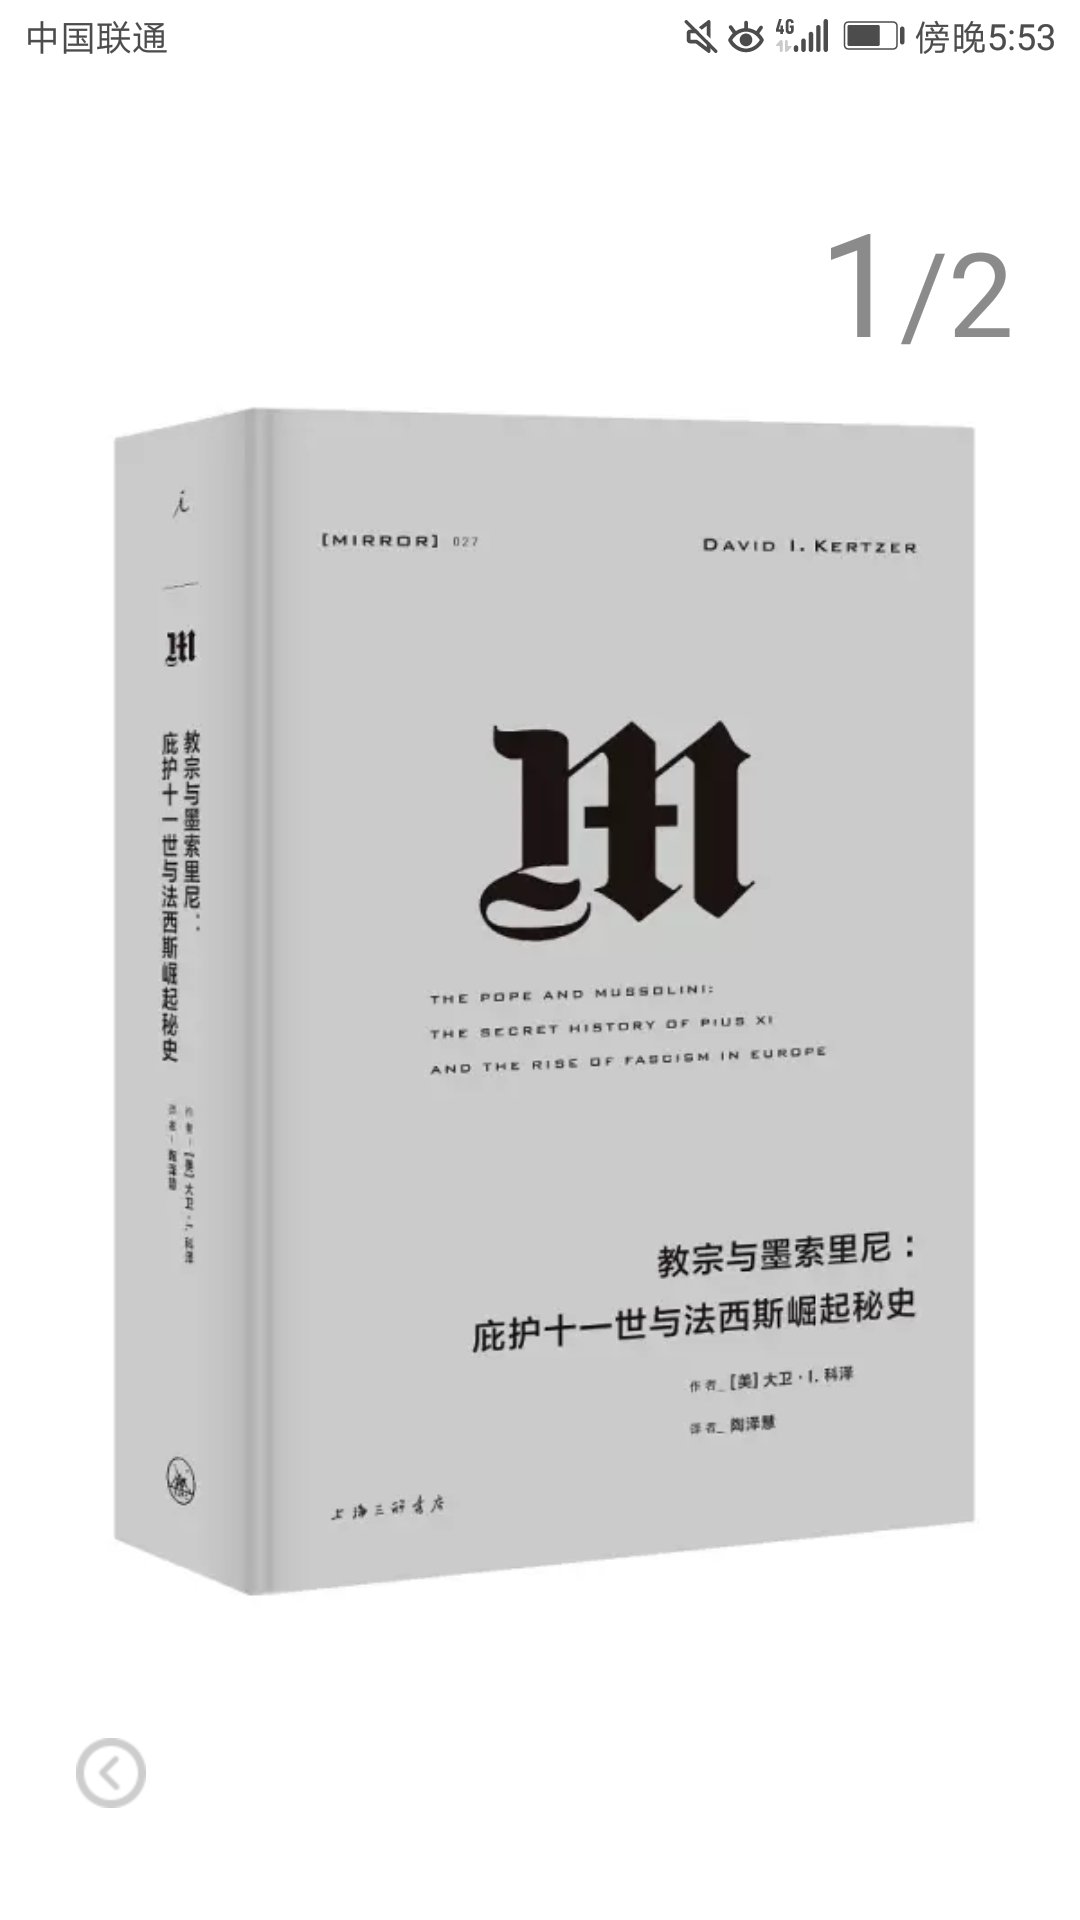 上海三联书店推出的理想国译丛系列，精装大16开，书脊锁线纸质优良，排版印刷得体大方，活动期间价格实惠，送货速度快，非常满意。